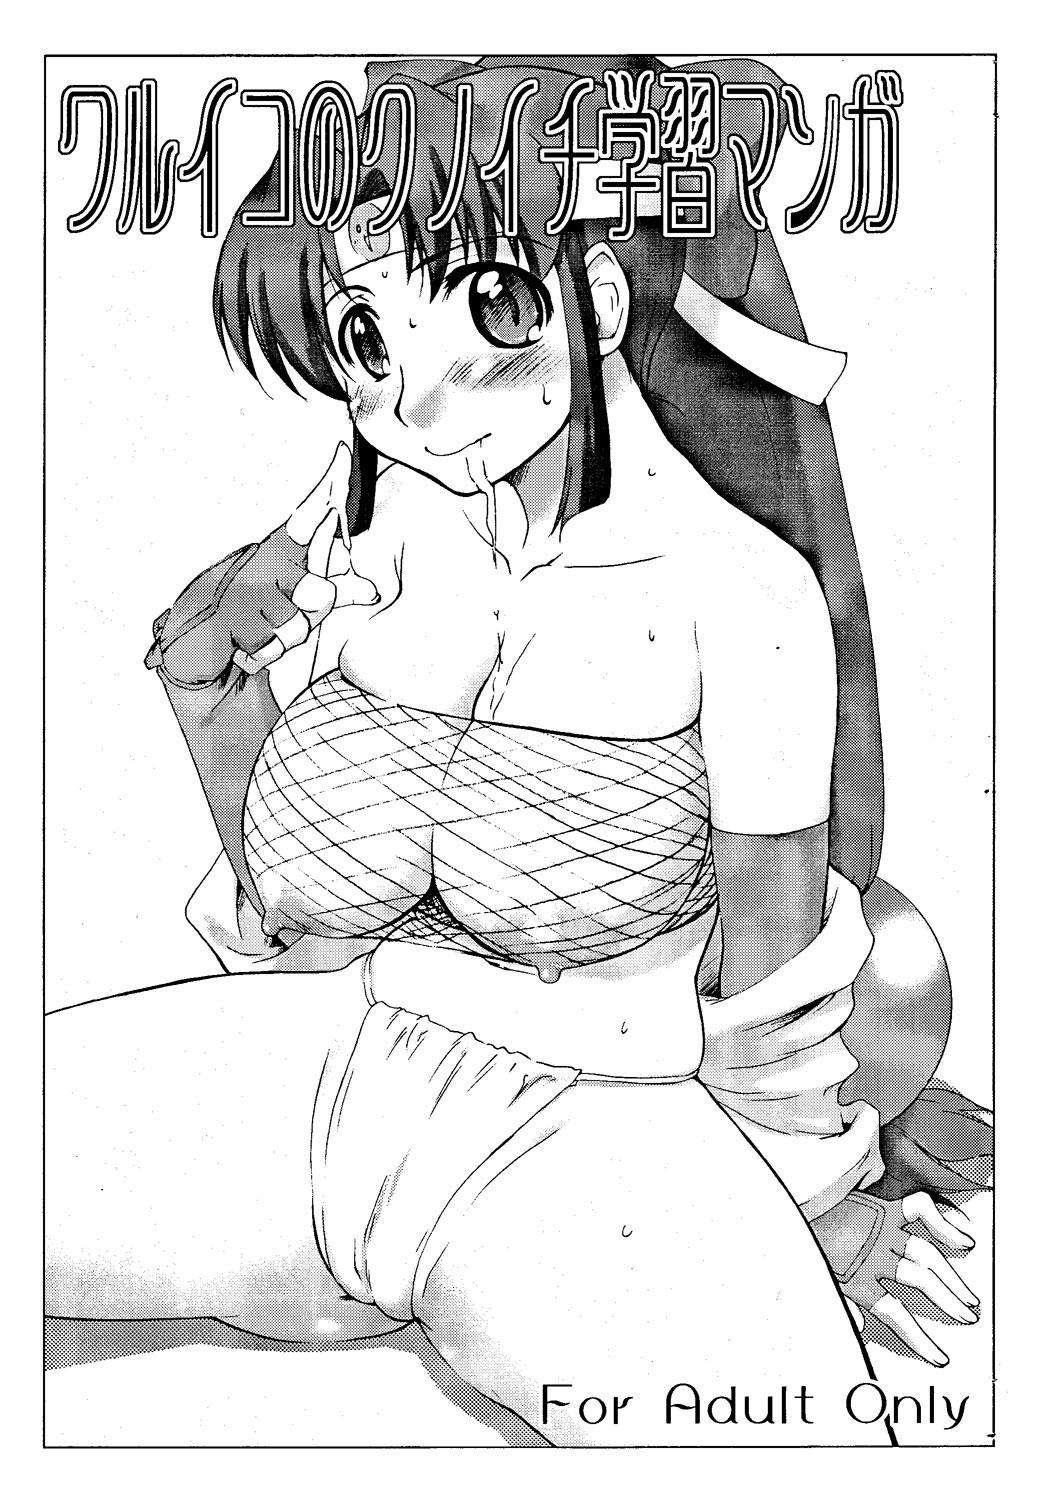 Gayemo Waruiko no Kunoichi Gakushuu Manga - 2x2 shinobuden Blows - Picture 1